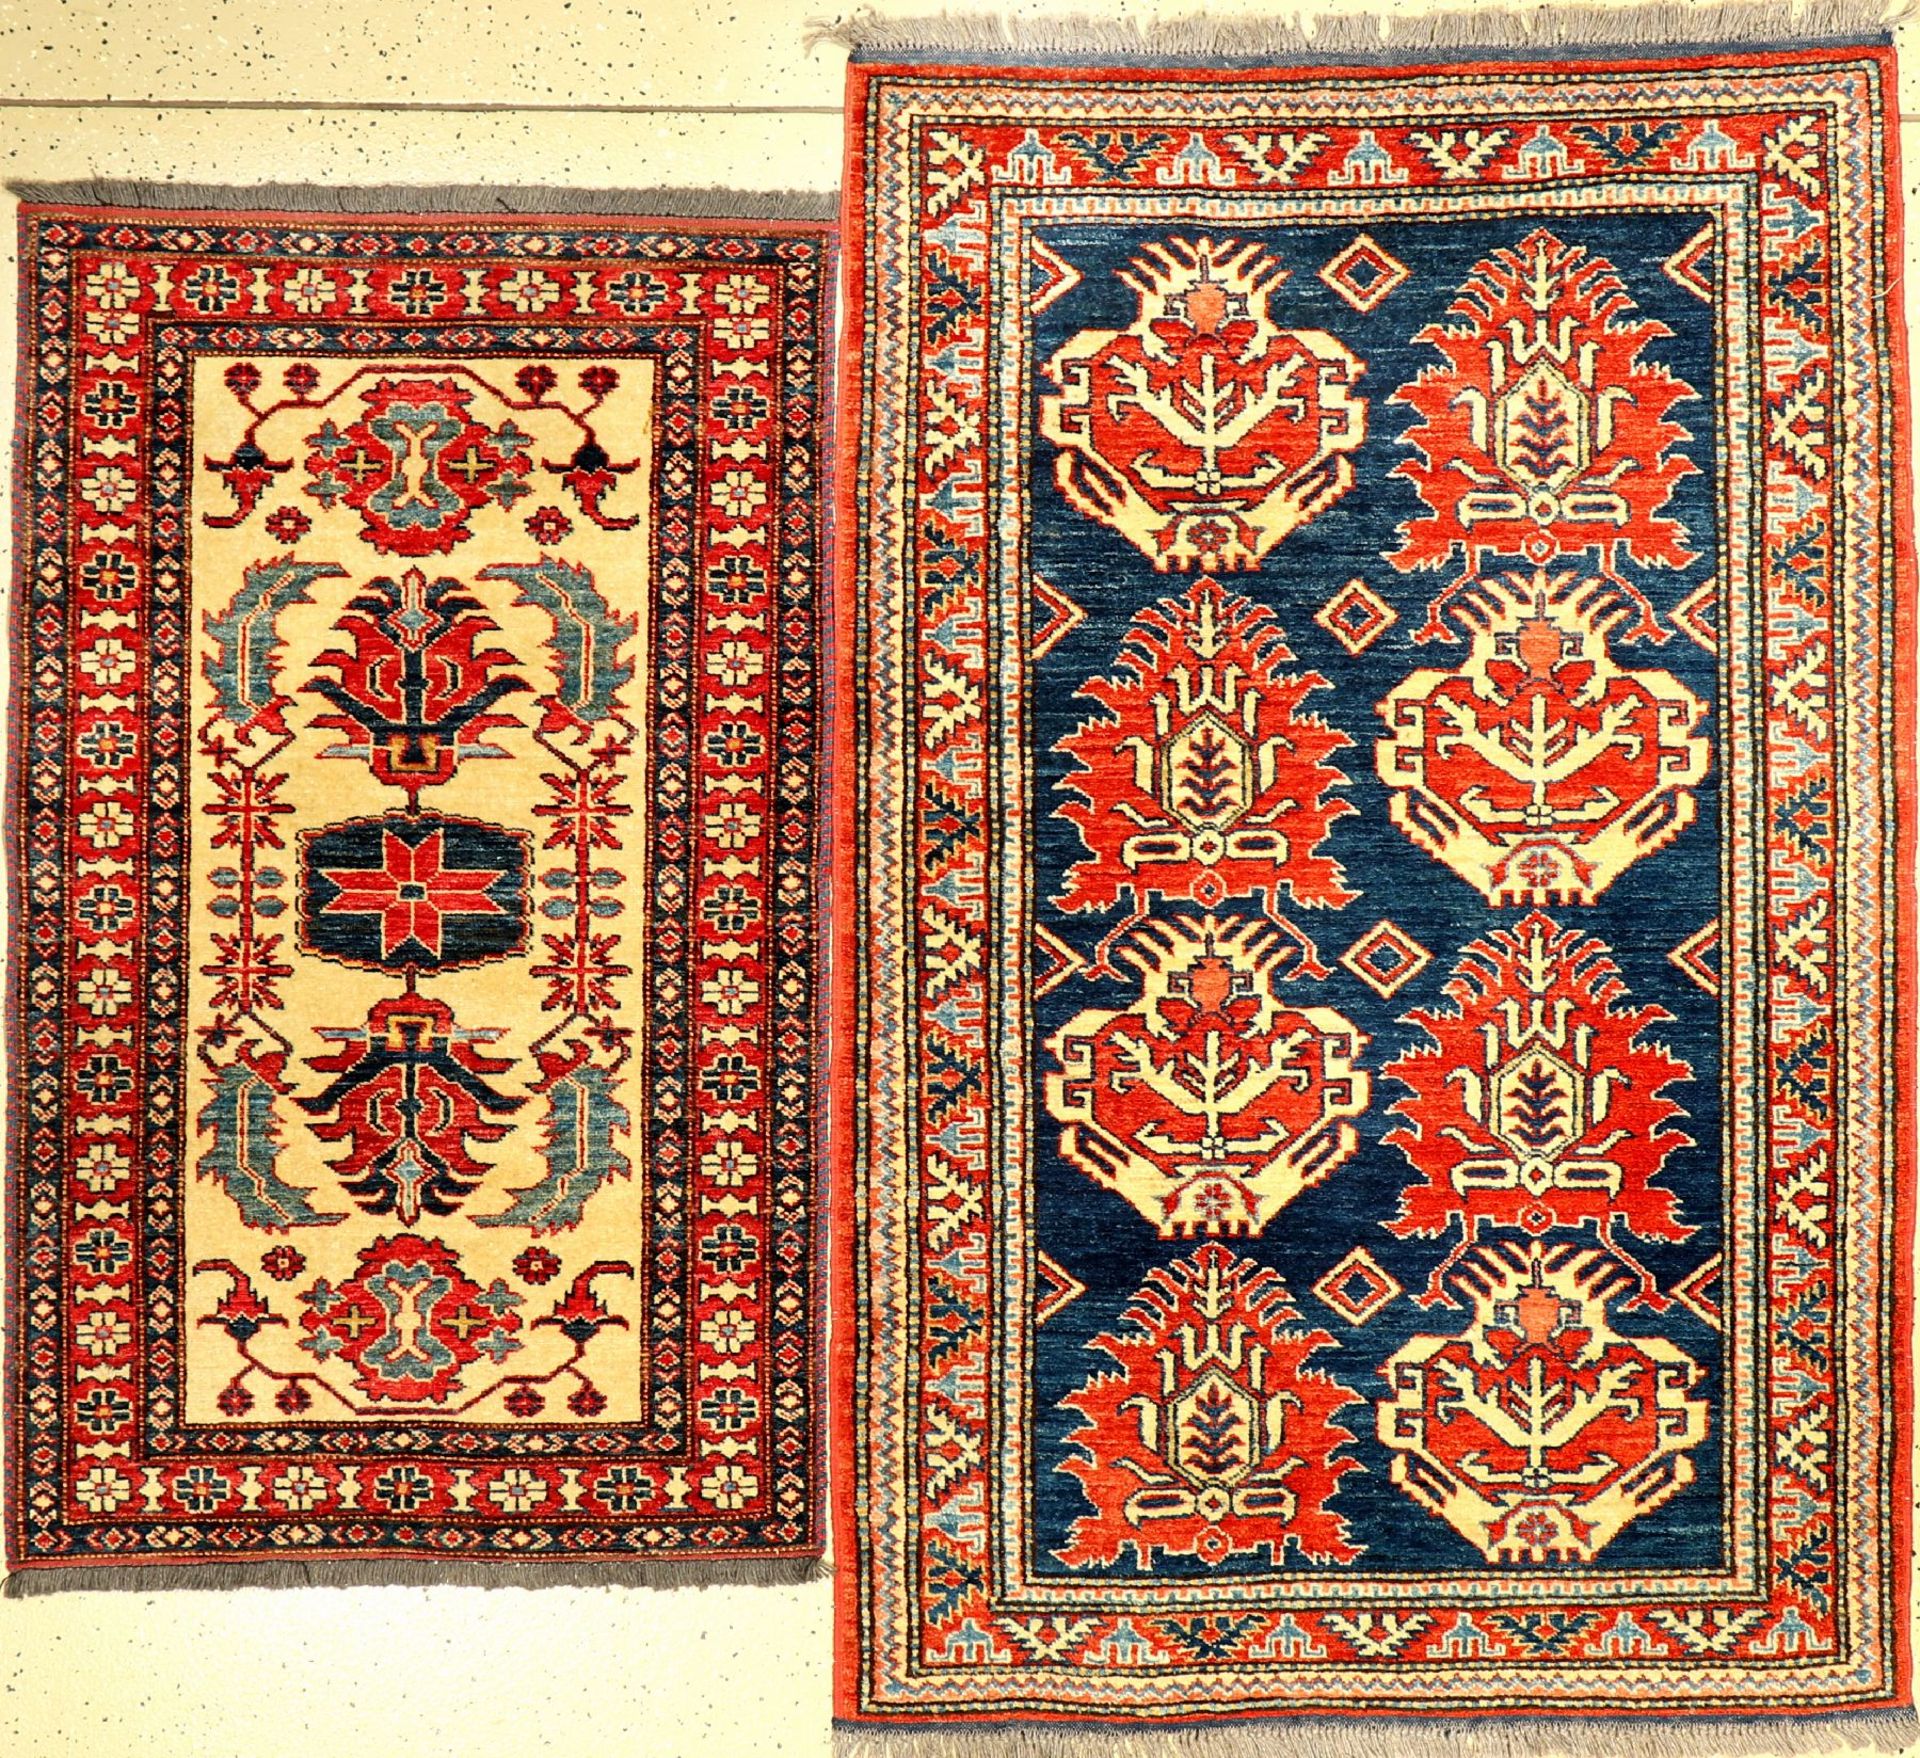 (2 Lots) 2x Schirwan (Re-Produktion), Pakistan, ca. 20 Jahre alt, Wolle auf Wolle, ca. 157 x 100 cm,